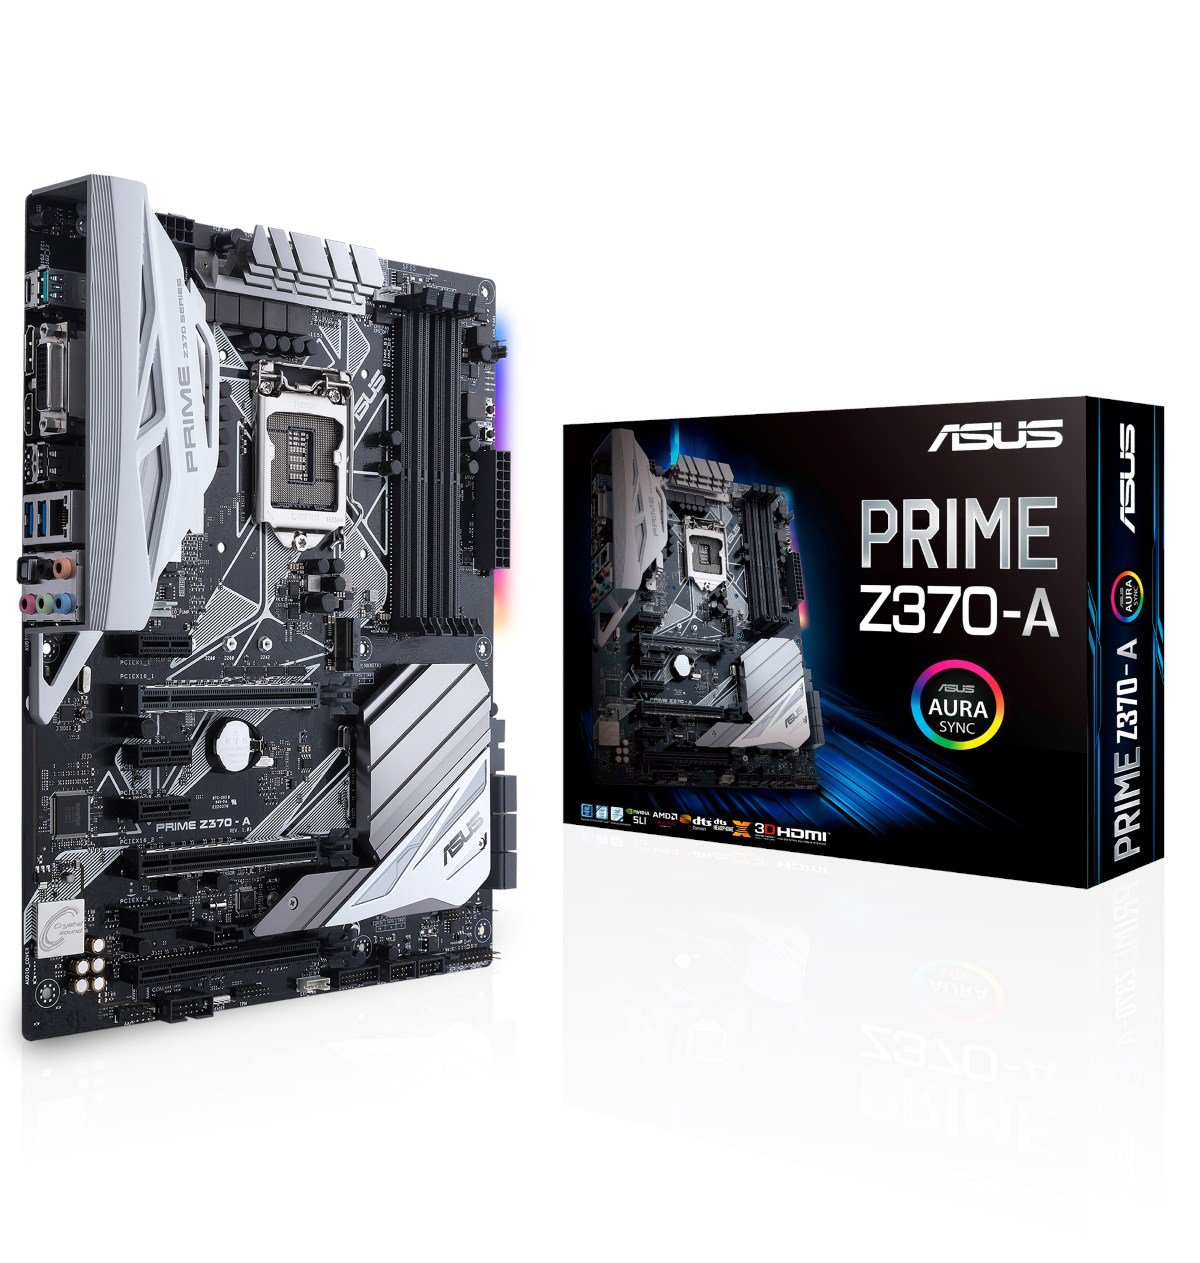 Asus Prime Z370 A Intel Socket 1151 Motherboard 90mb0v60 M0eay0 Ccl